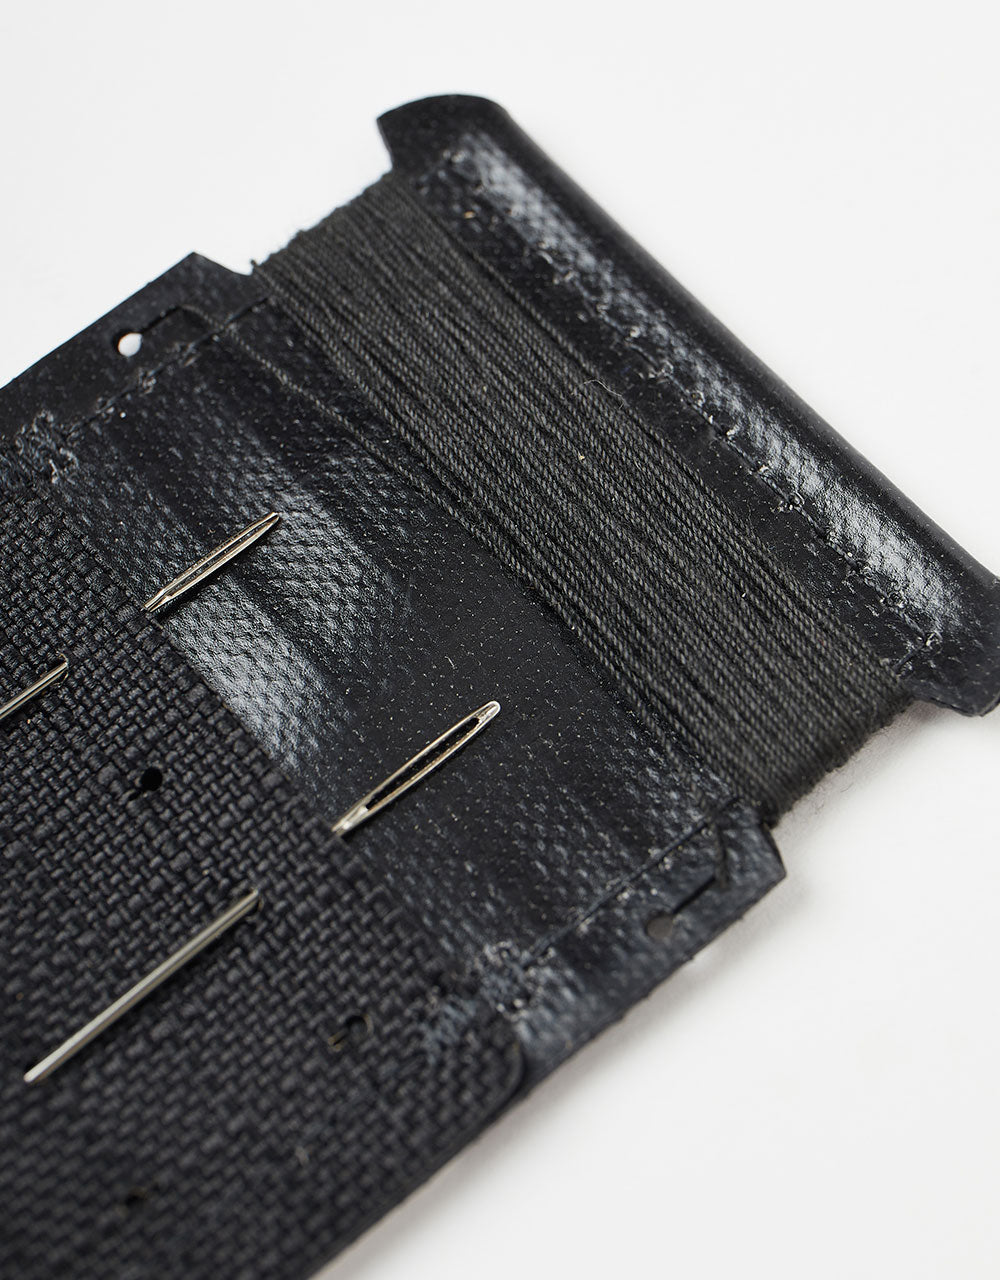 Patagonia Worn Wear Field Repair Kit - Black